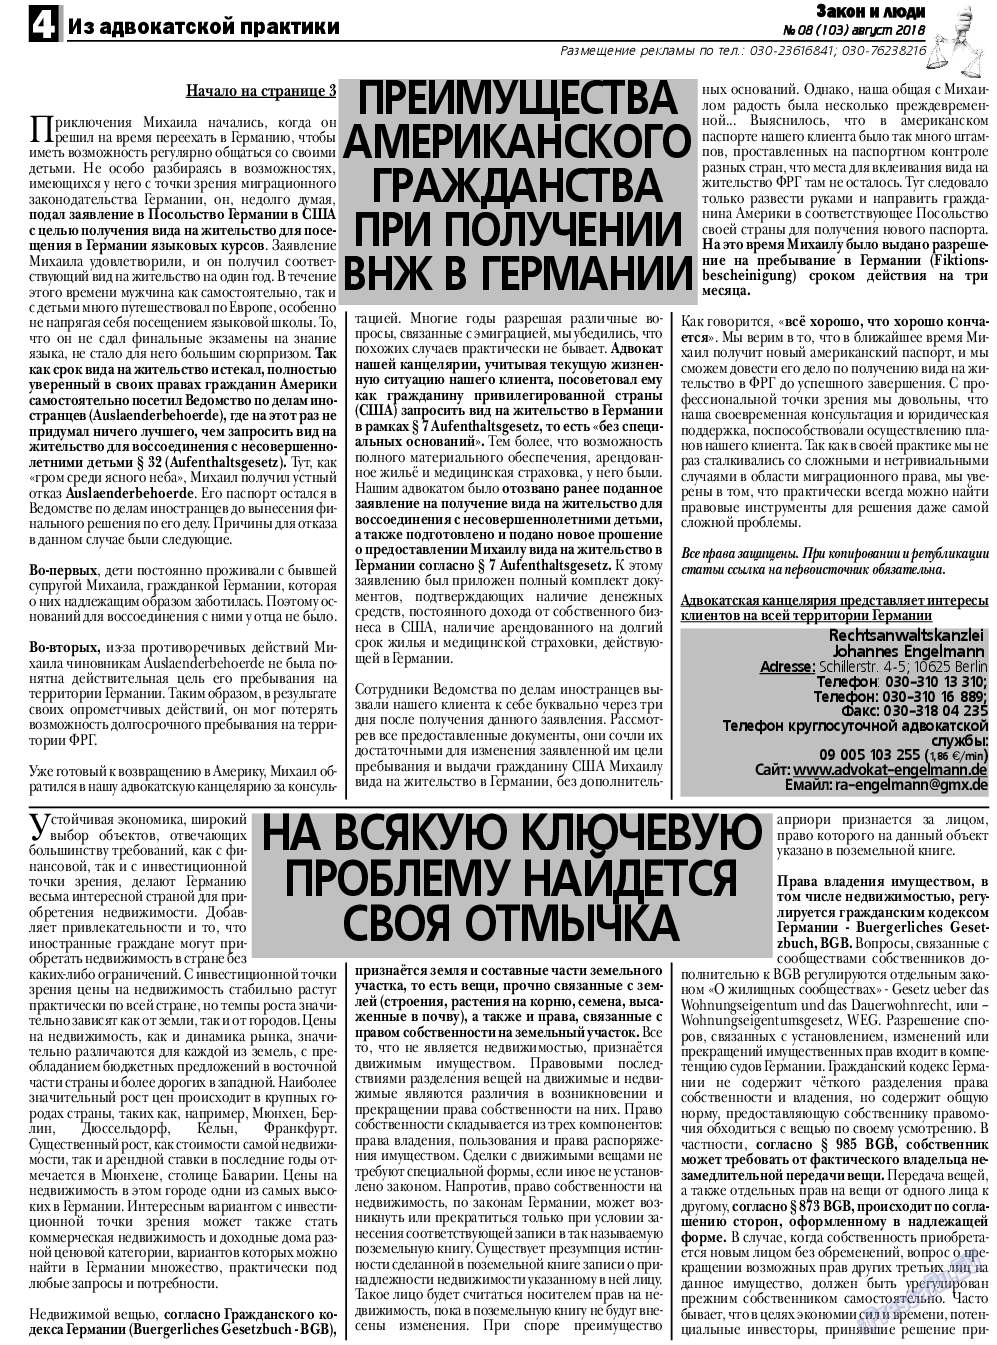 Закон и люди, газета. 2018 №8 стр.4